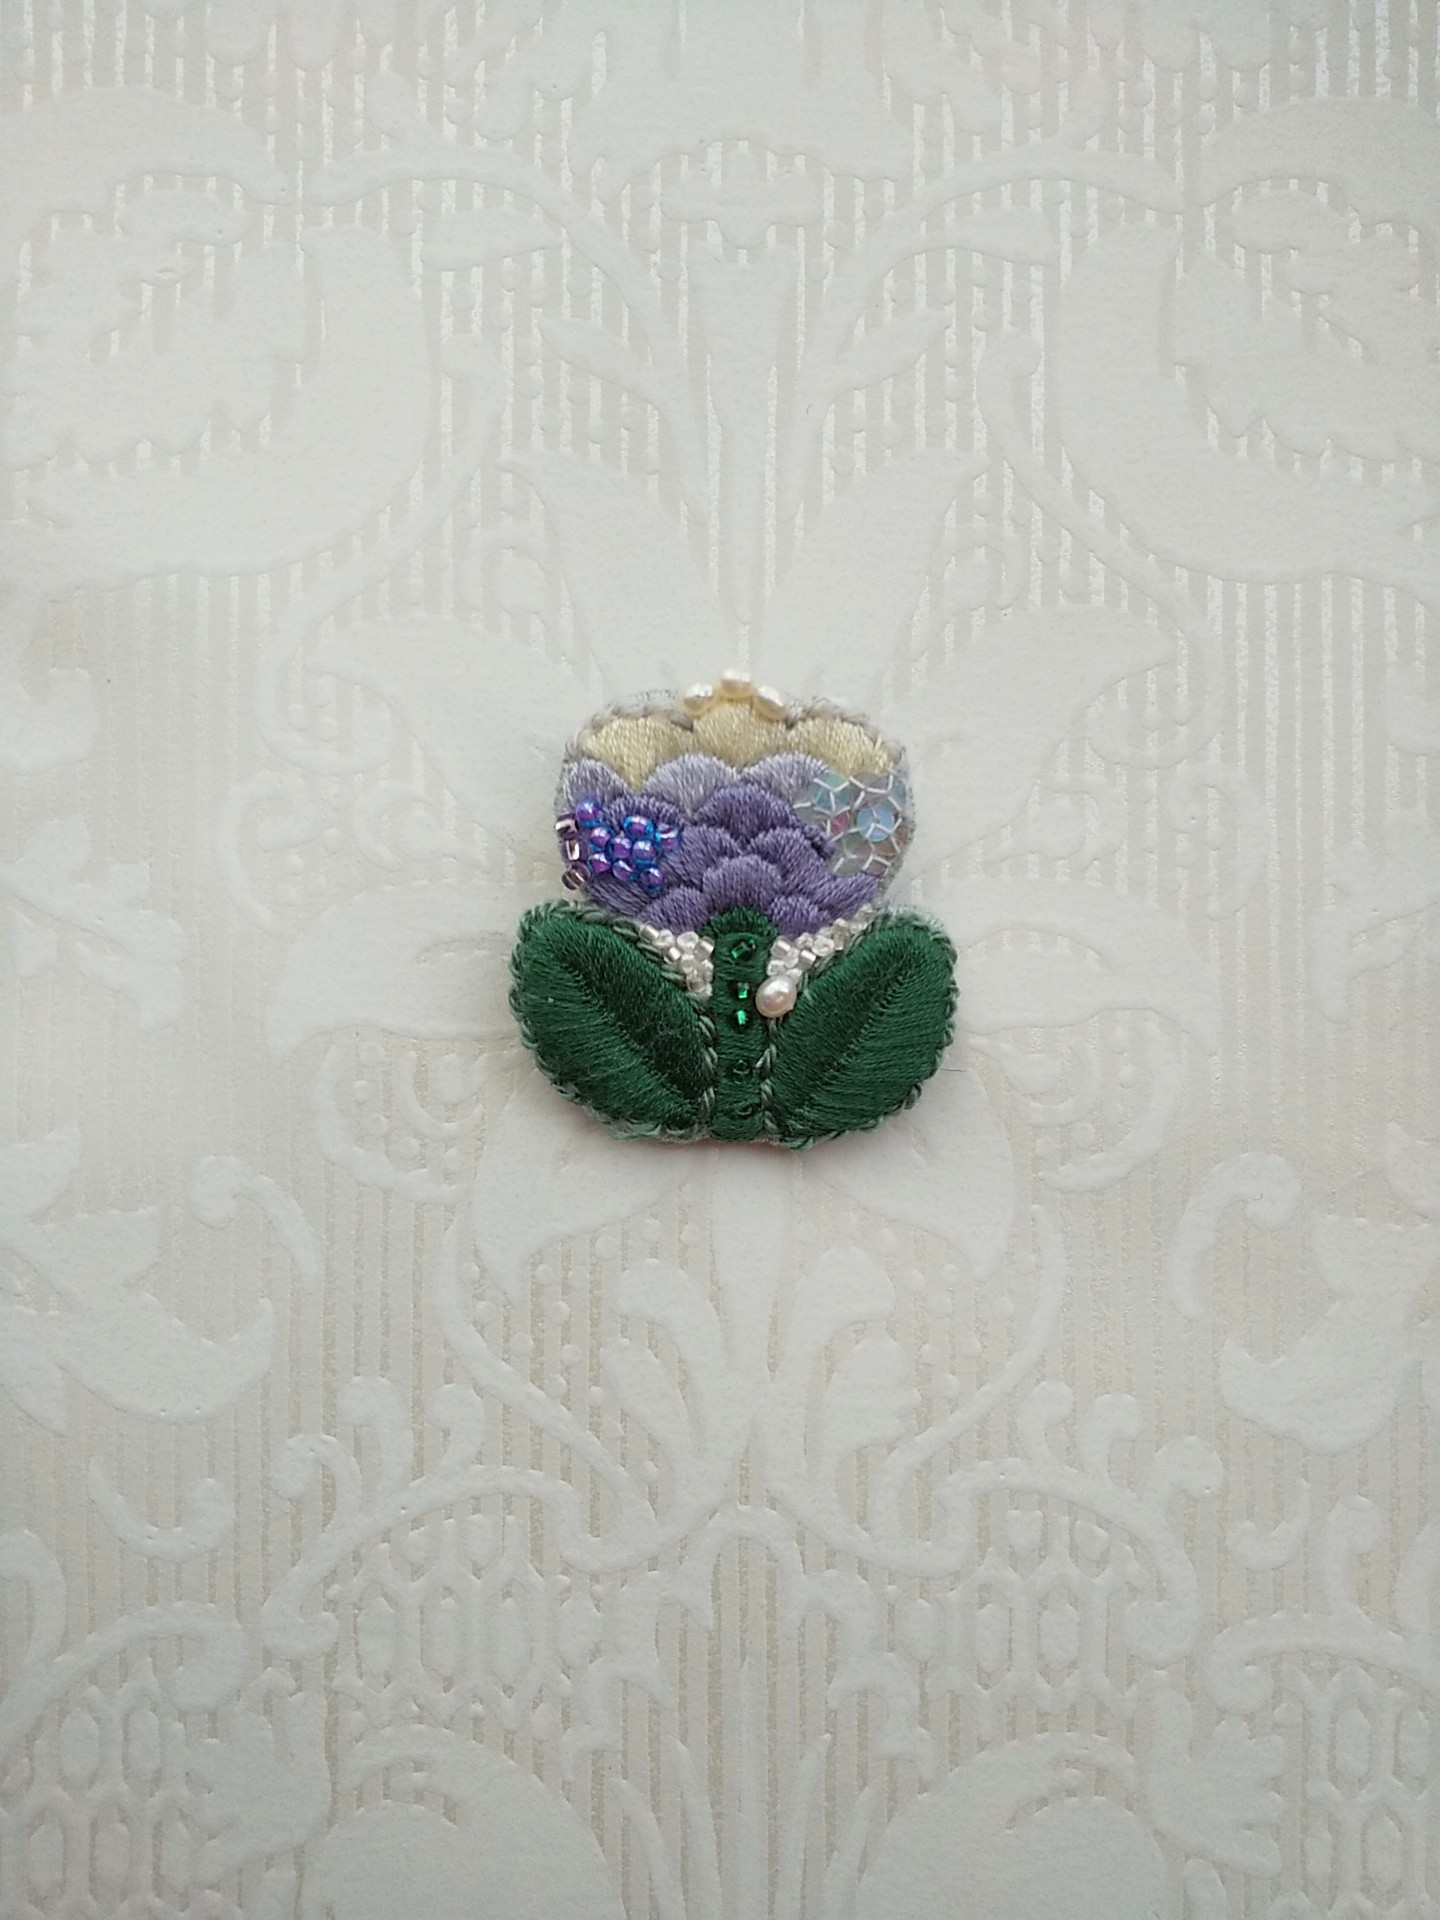 32 刺繍ブローチ 春のおとずれ 紫のお花 Iichi ハンドメイド クラフト作品 手仕事品の通販